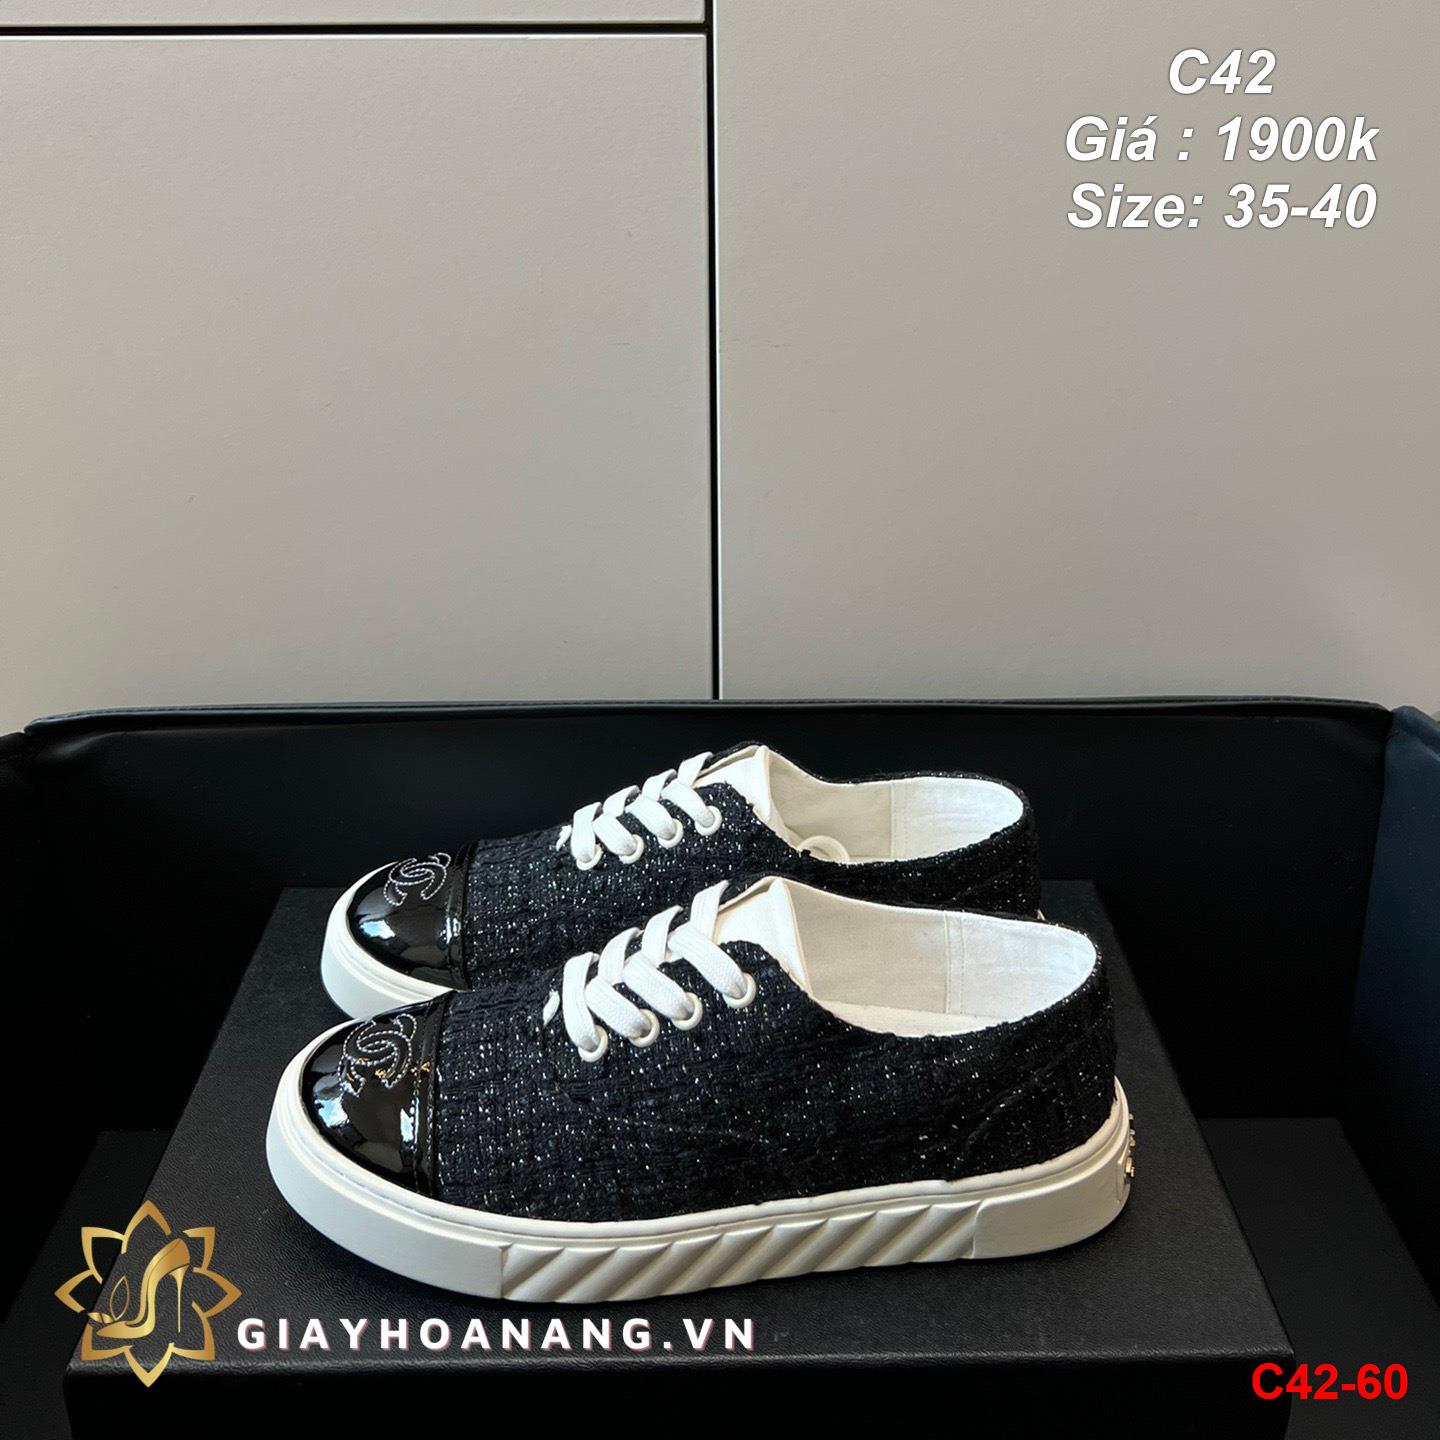 C42-60 Chanel giày thể thao siêu cấp